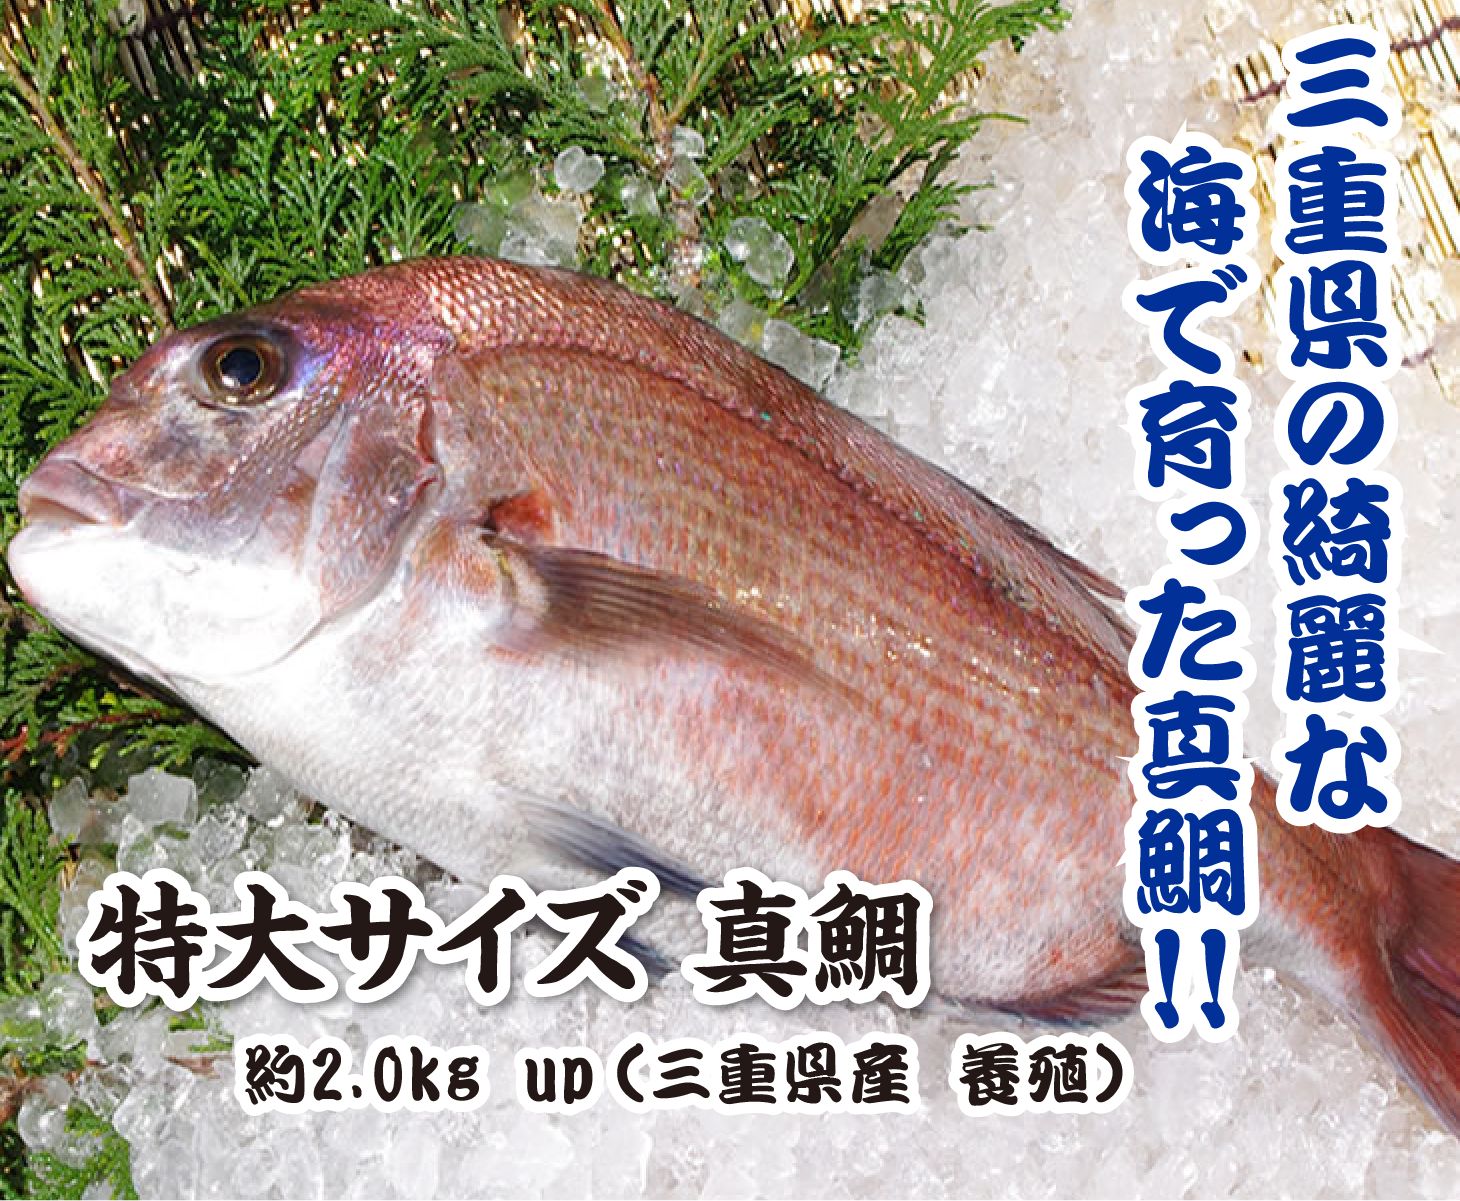 活〆真鯛 2.0kg up